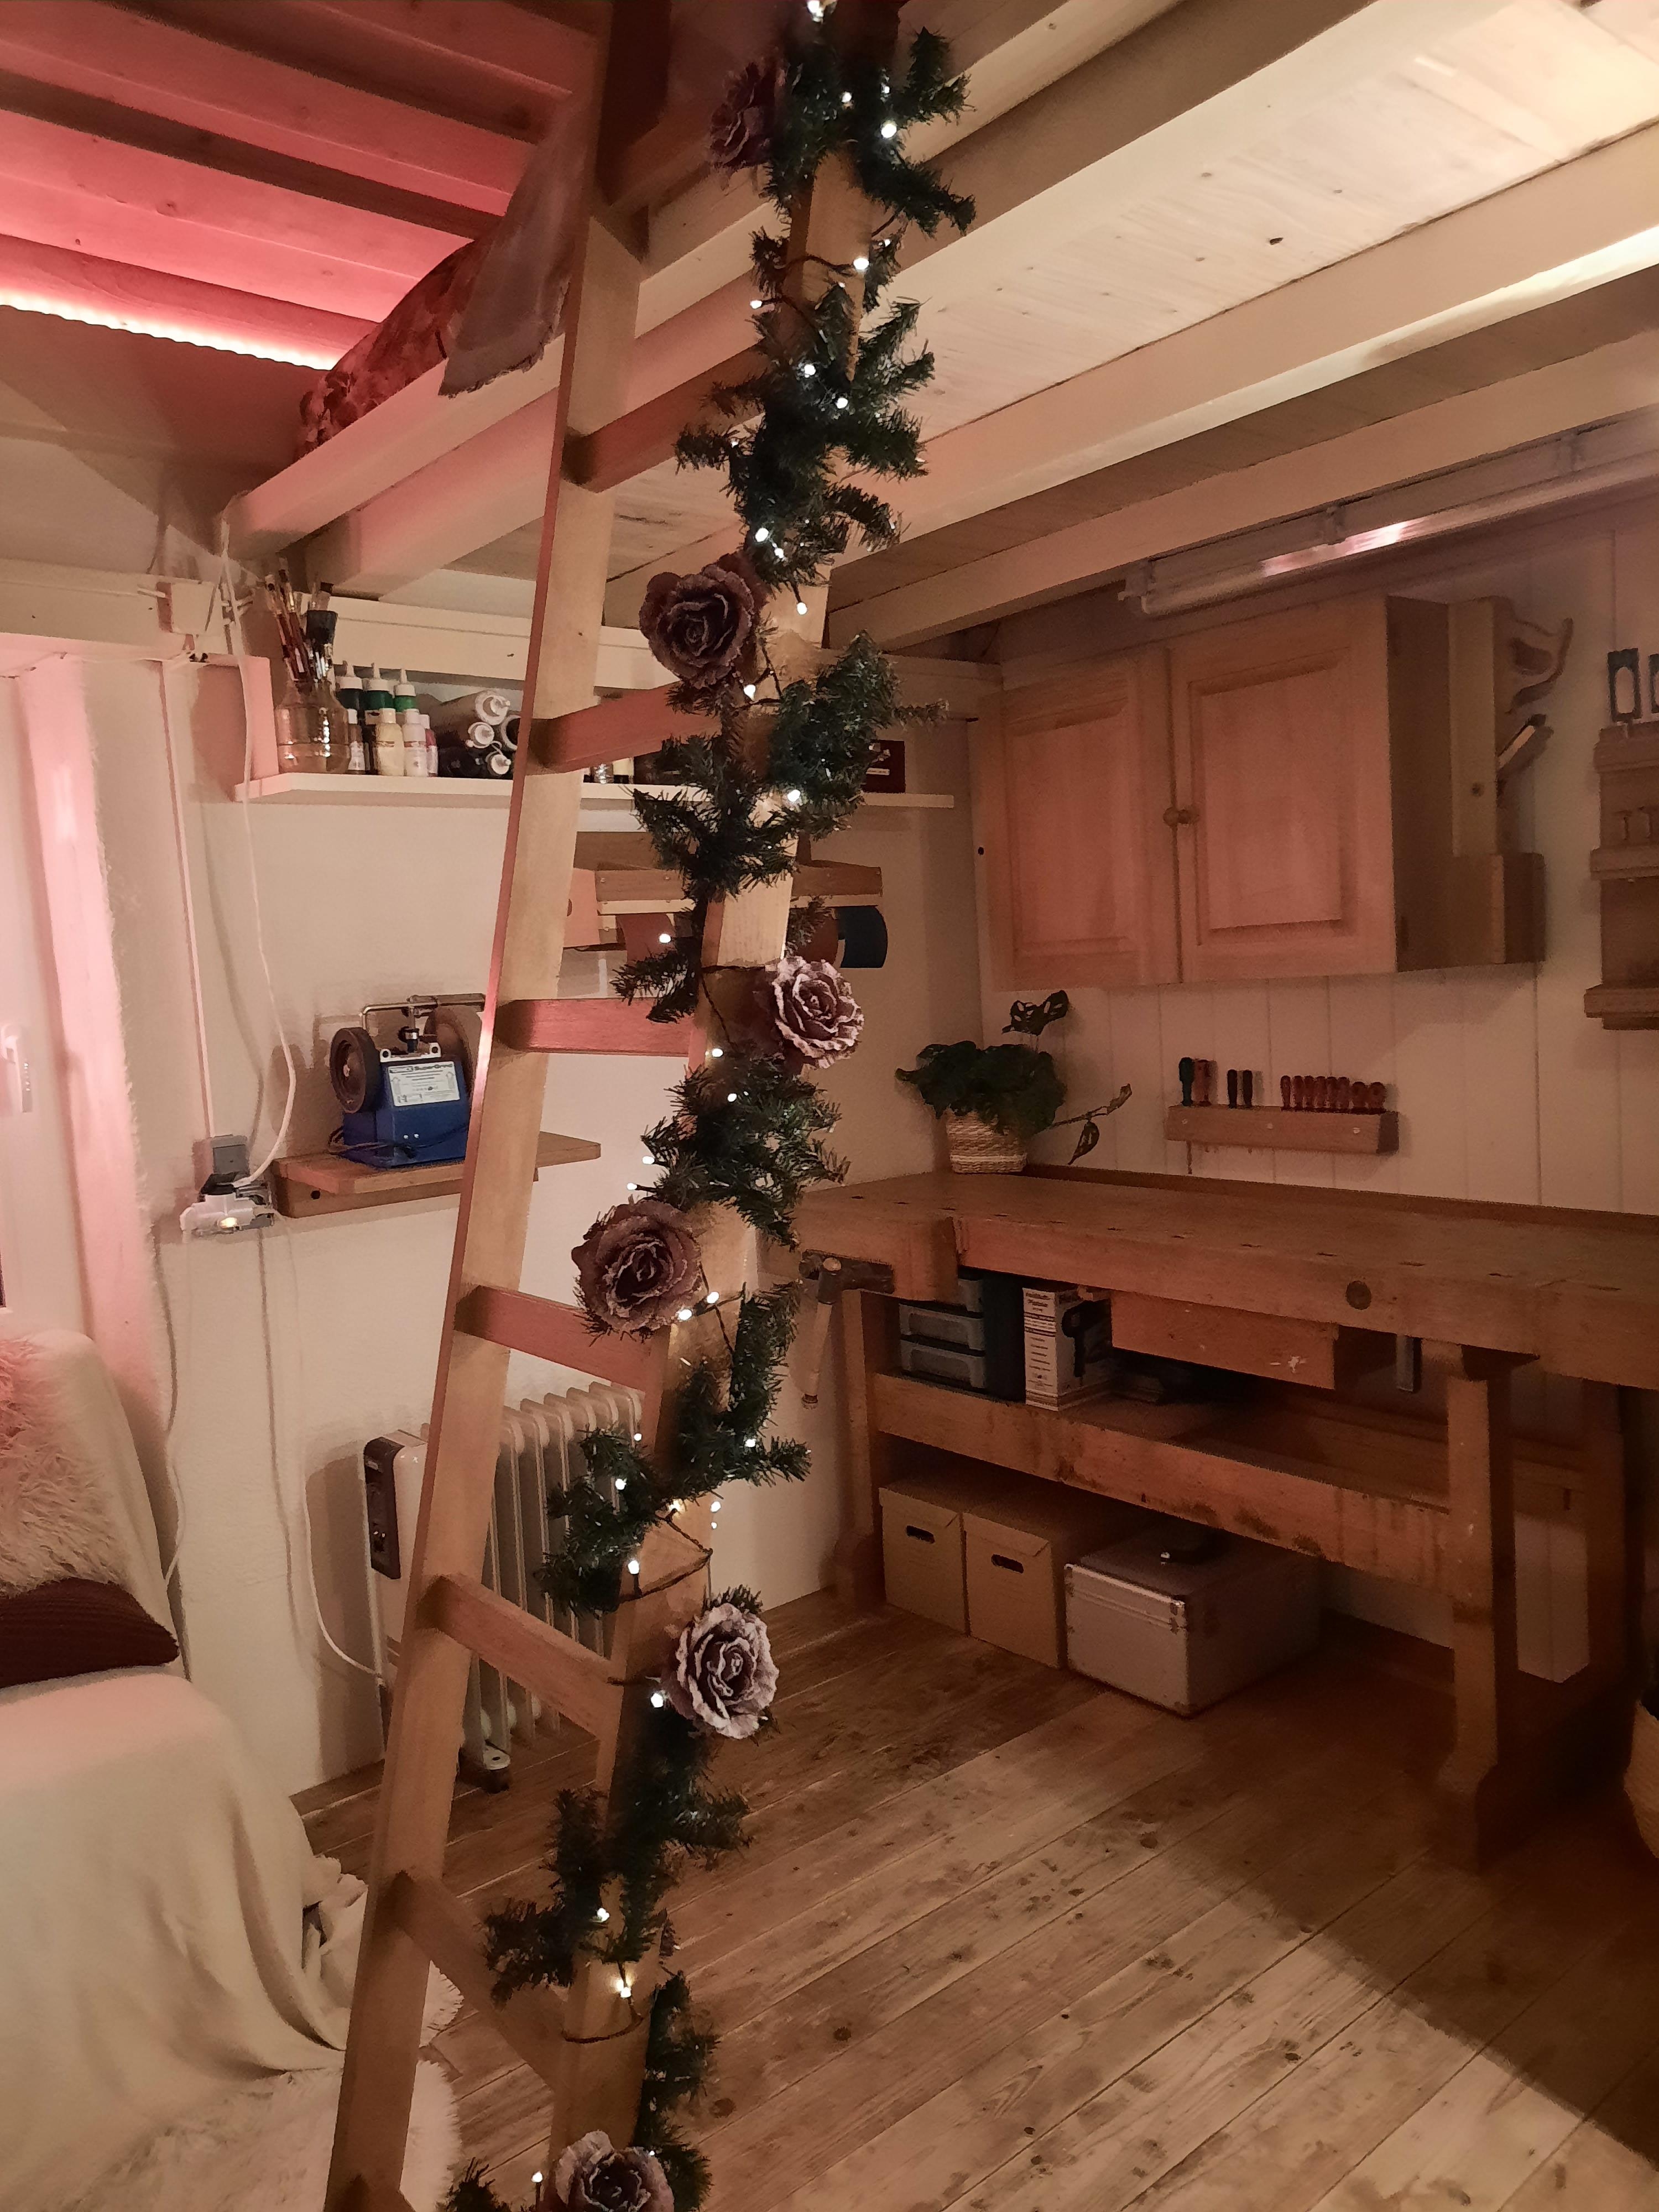 Meine kleine Werkstattwohnung...
#wohnung #werkstatt #weihnachten #weihnachtsdeko #kreativraum #holz #weiß #rosen #couchstyle 